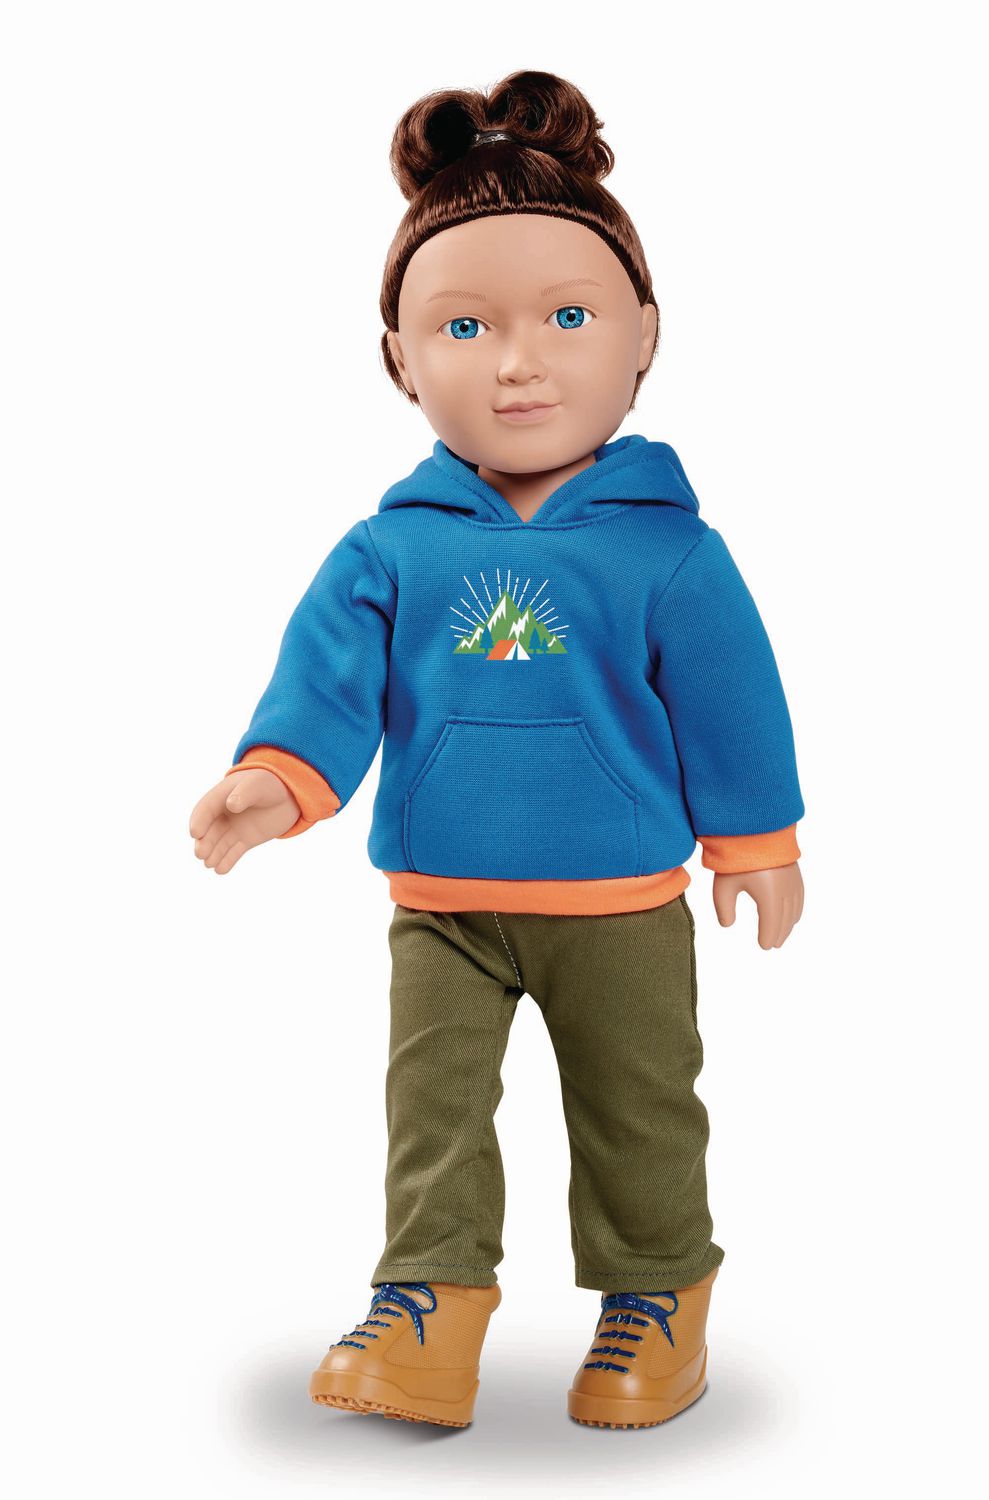 outdoorsy boy doll